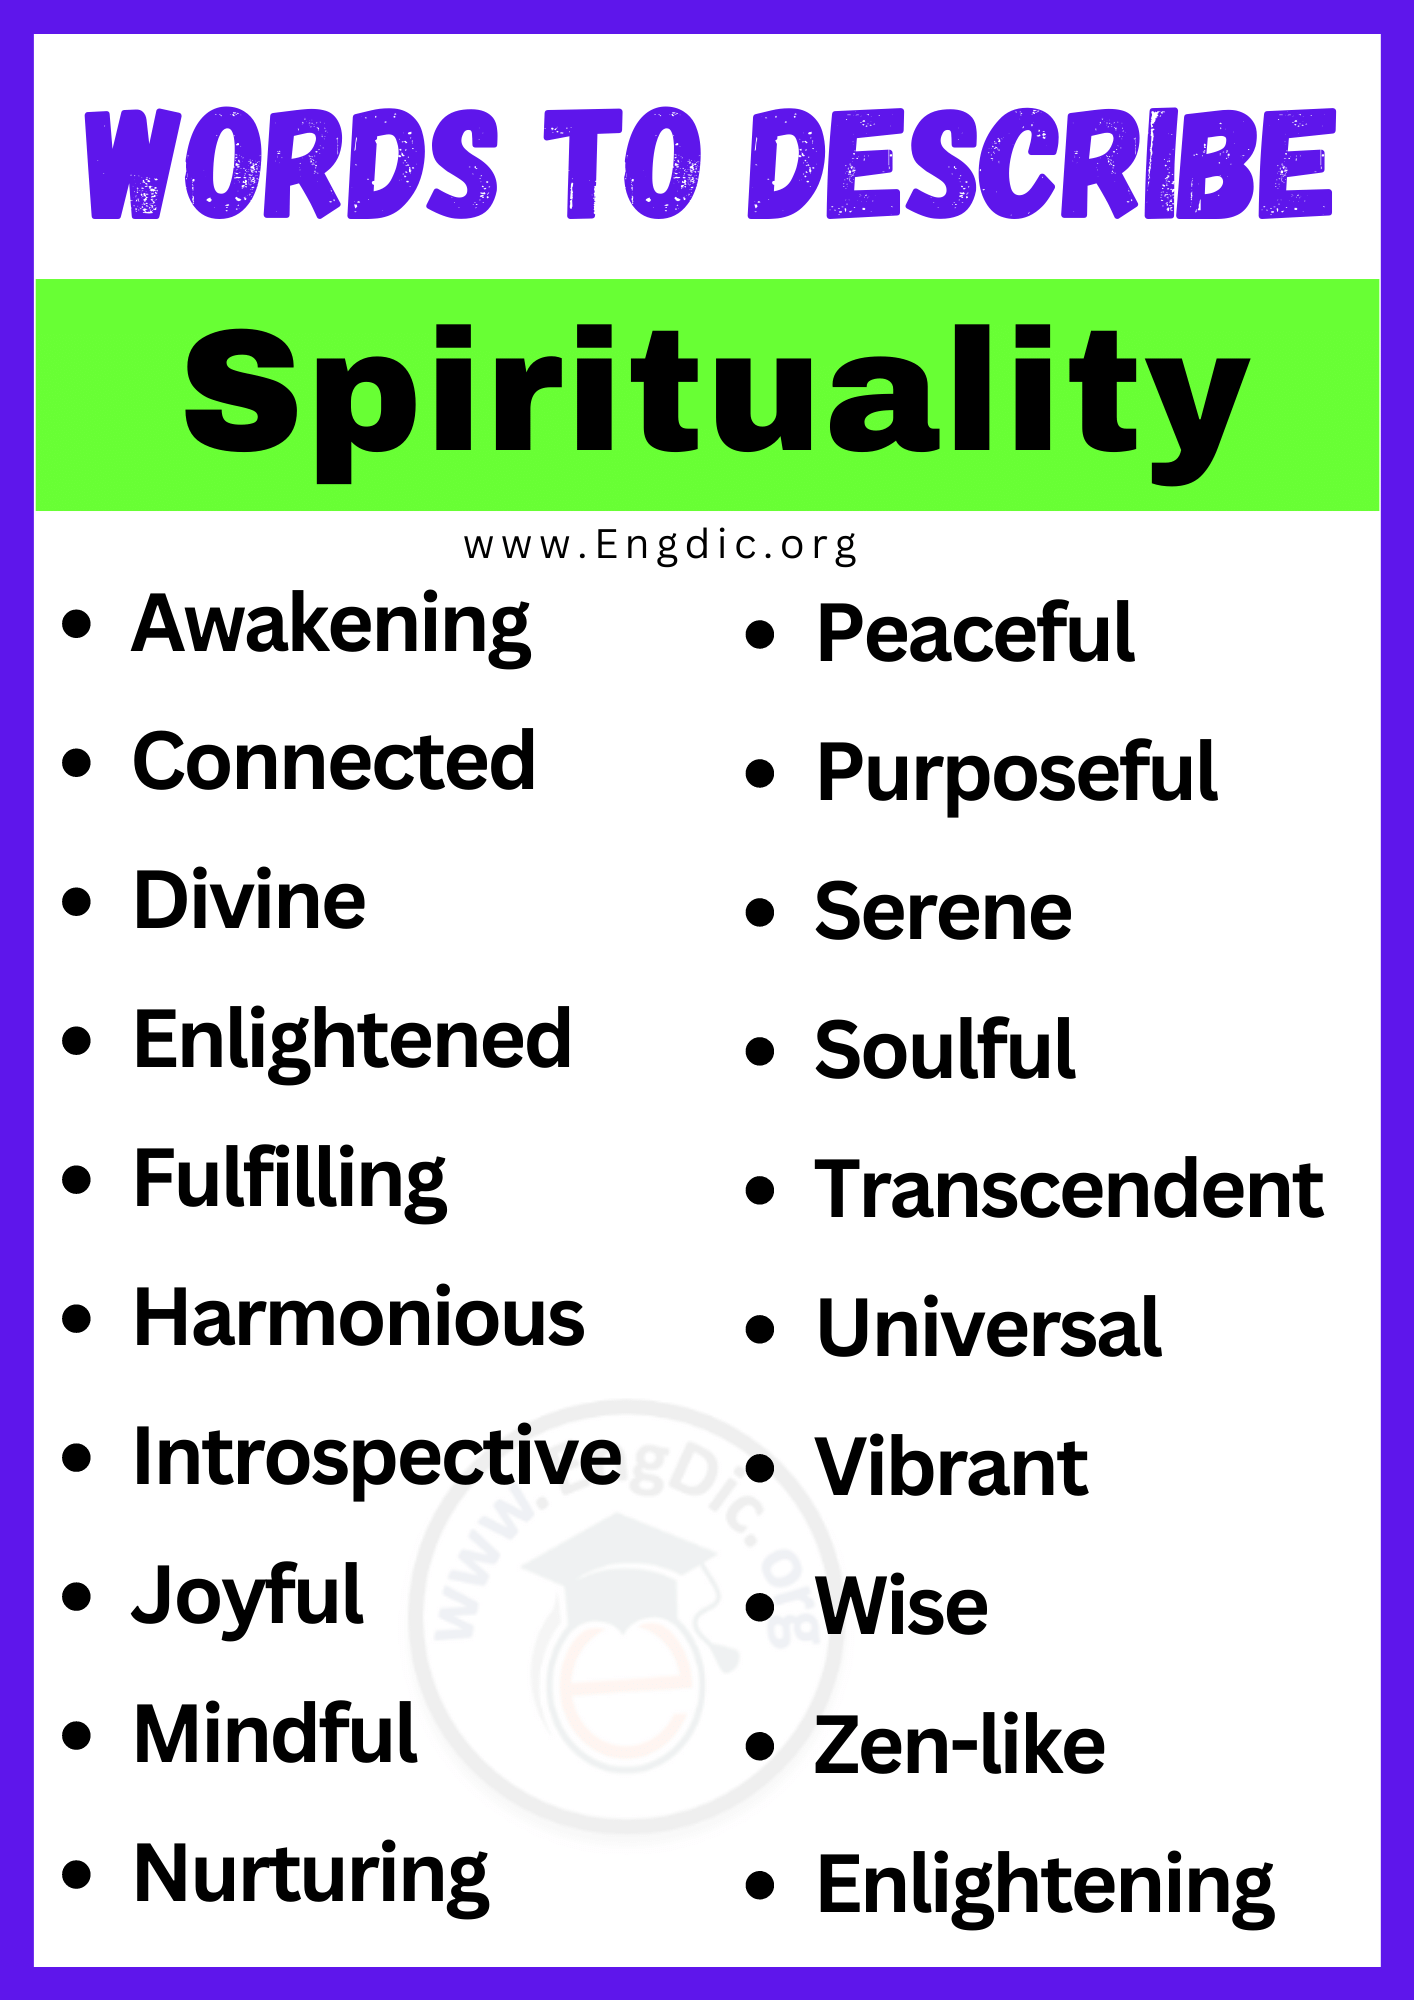 Words to Describe Spirituality